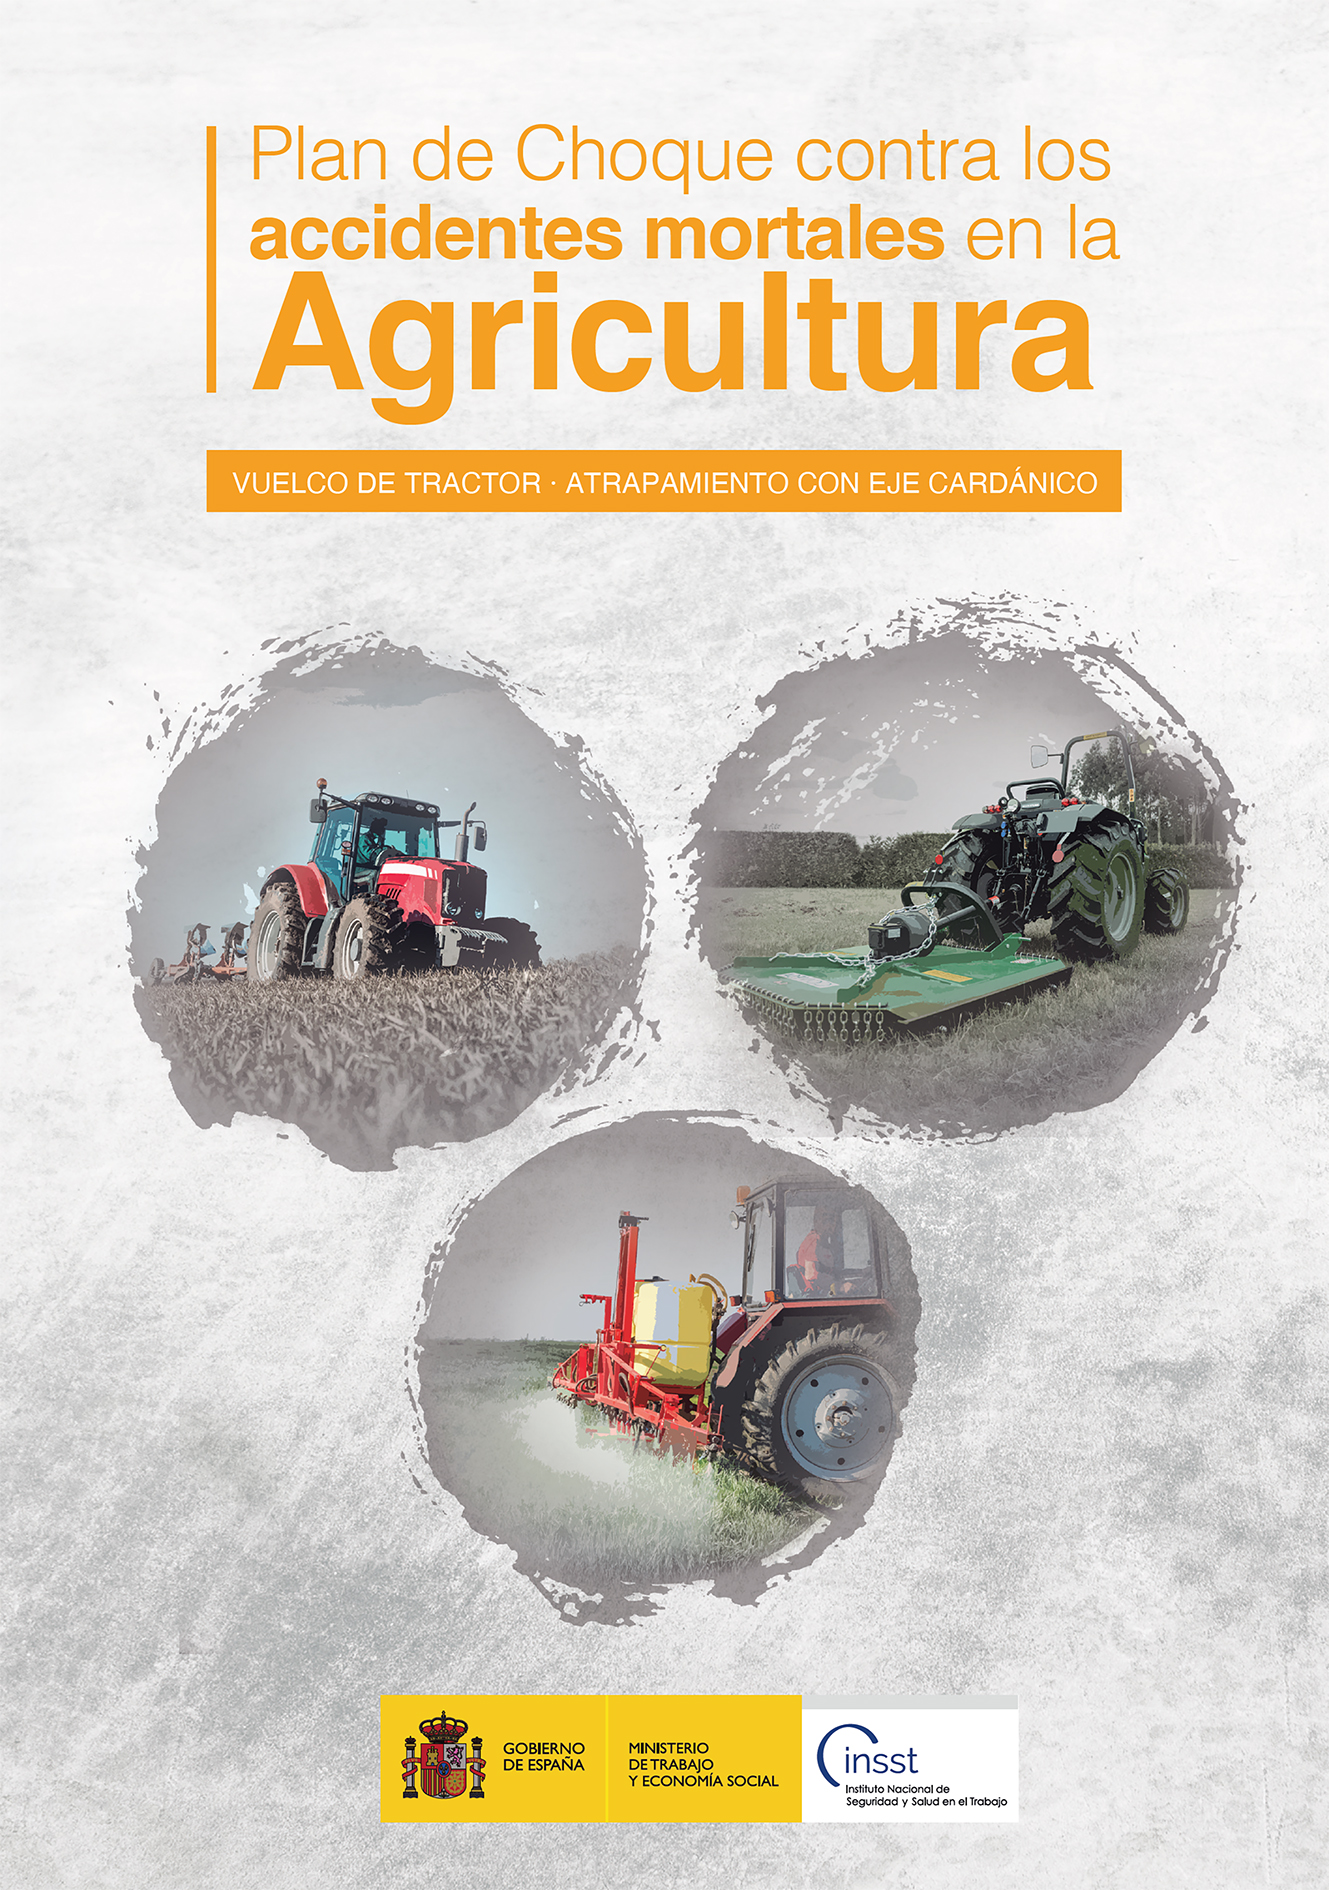 Portada folleto Plan de Choque accidentes mortales Agricultura